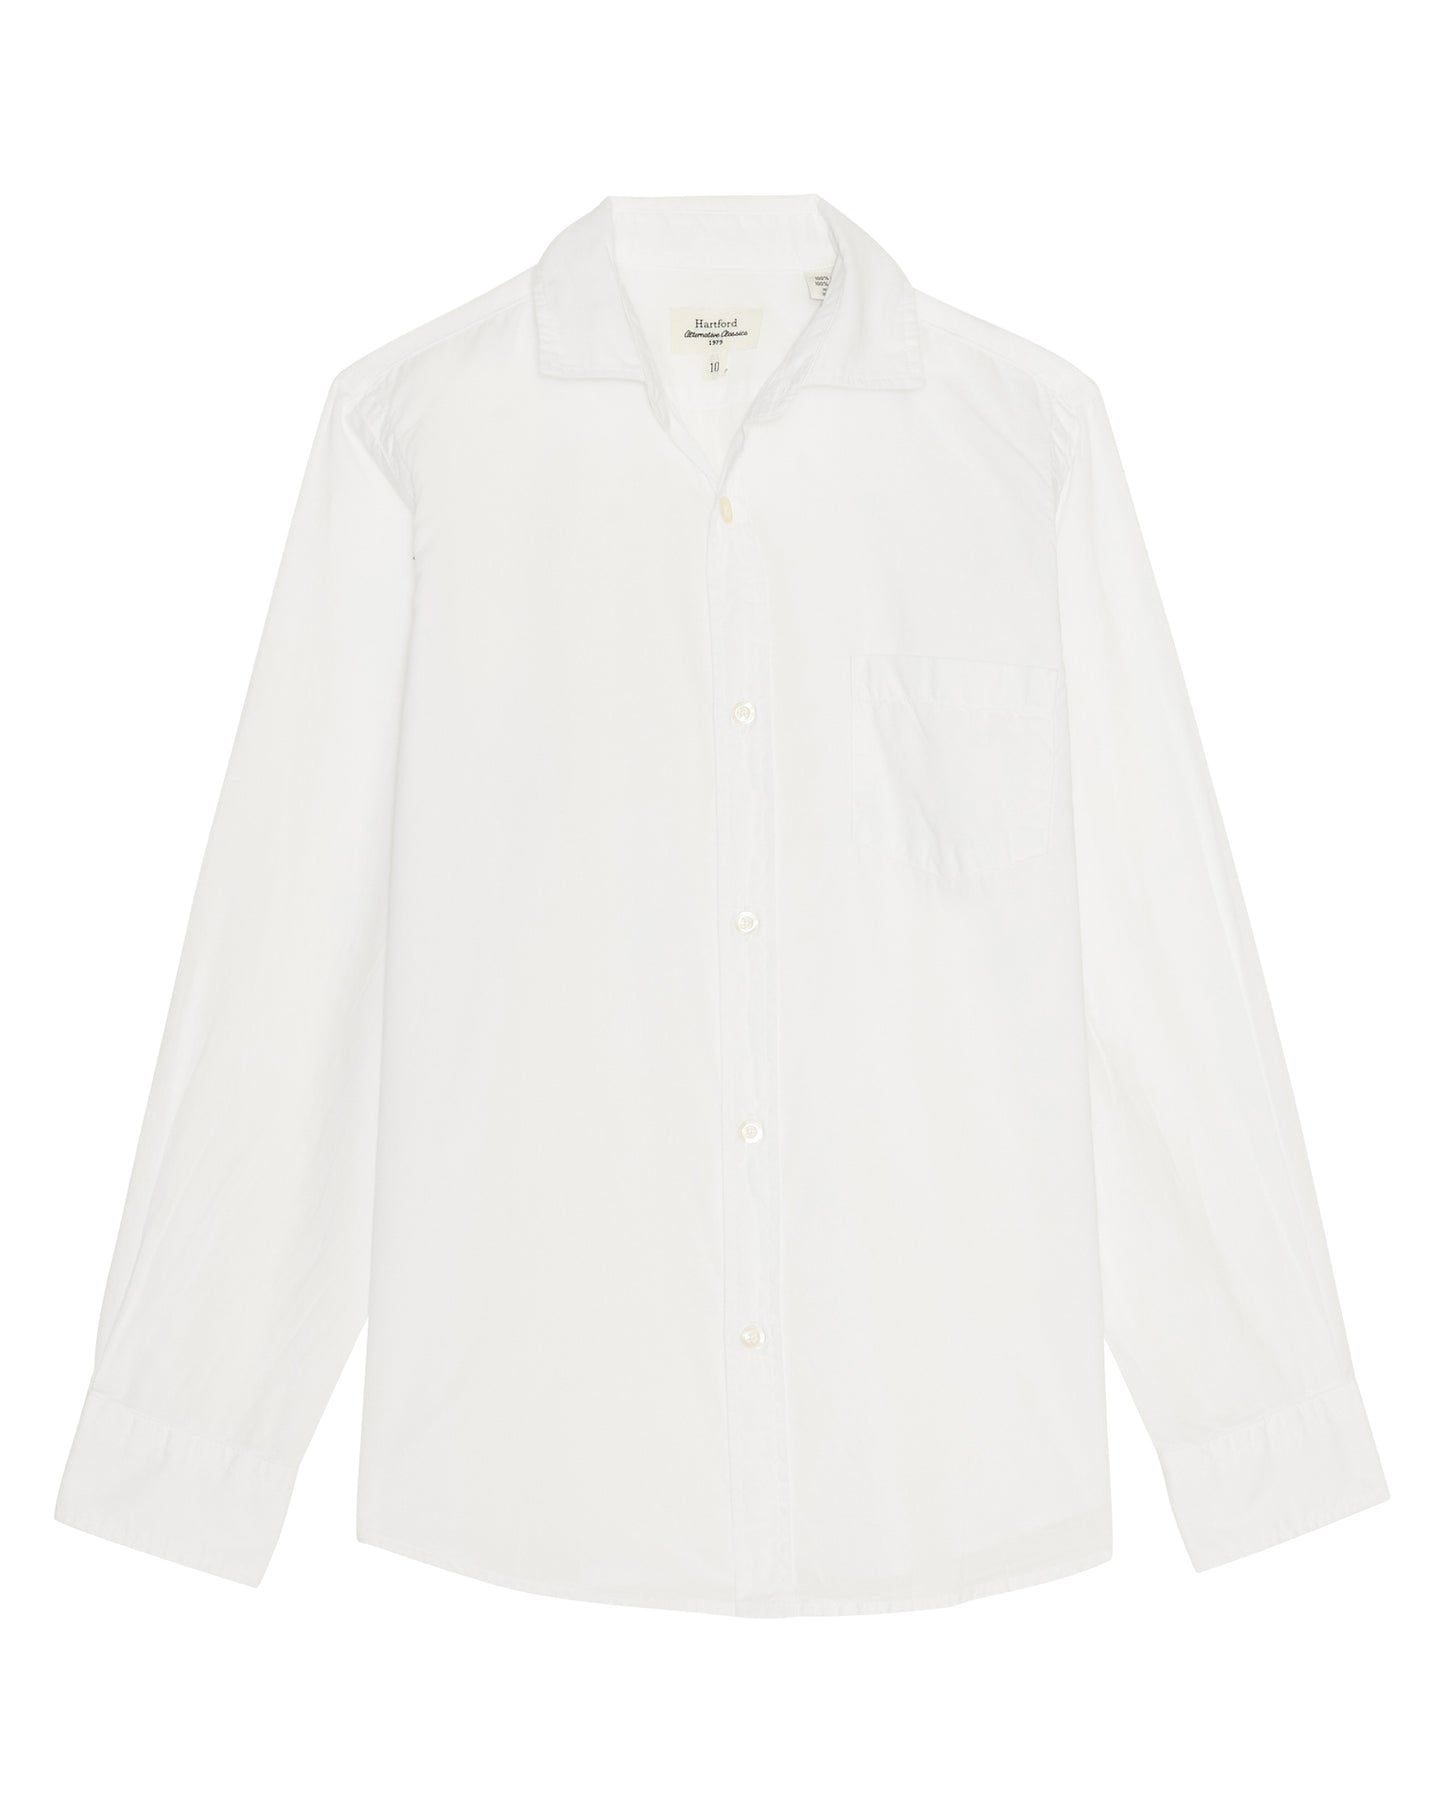 Paul Boys' White Cotton Voile Shirt